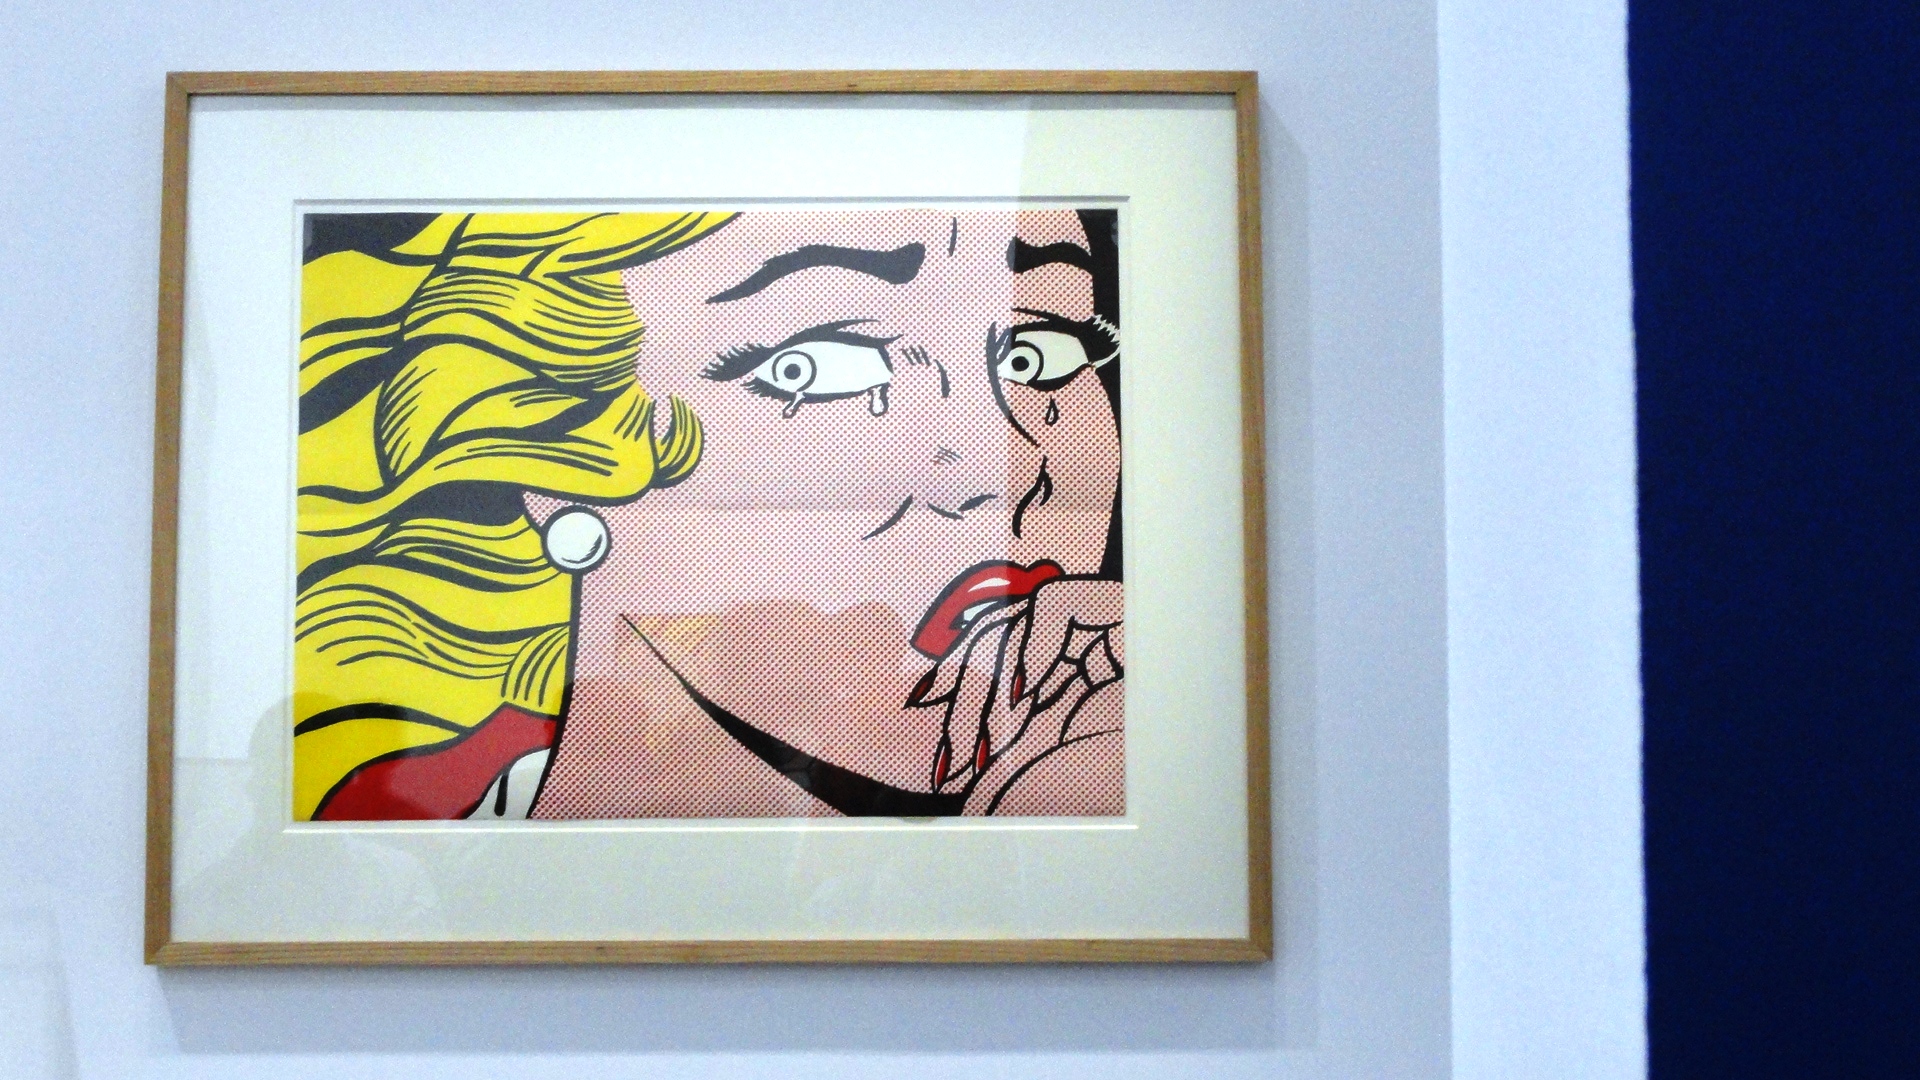 Rétrospective de Roy Lichtenstein, Centre Pompidou - Des sujets émotionnels dans un style détaché - Tableau "comics"